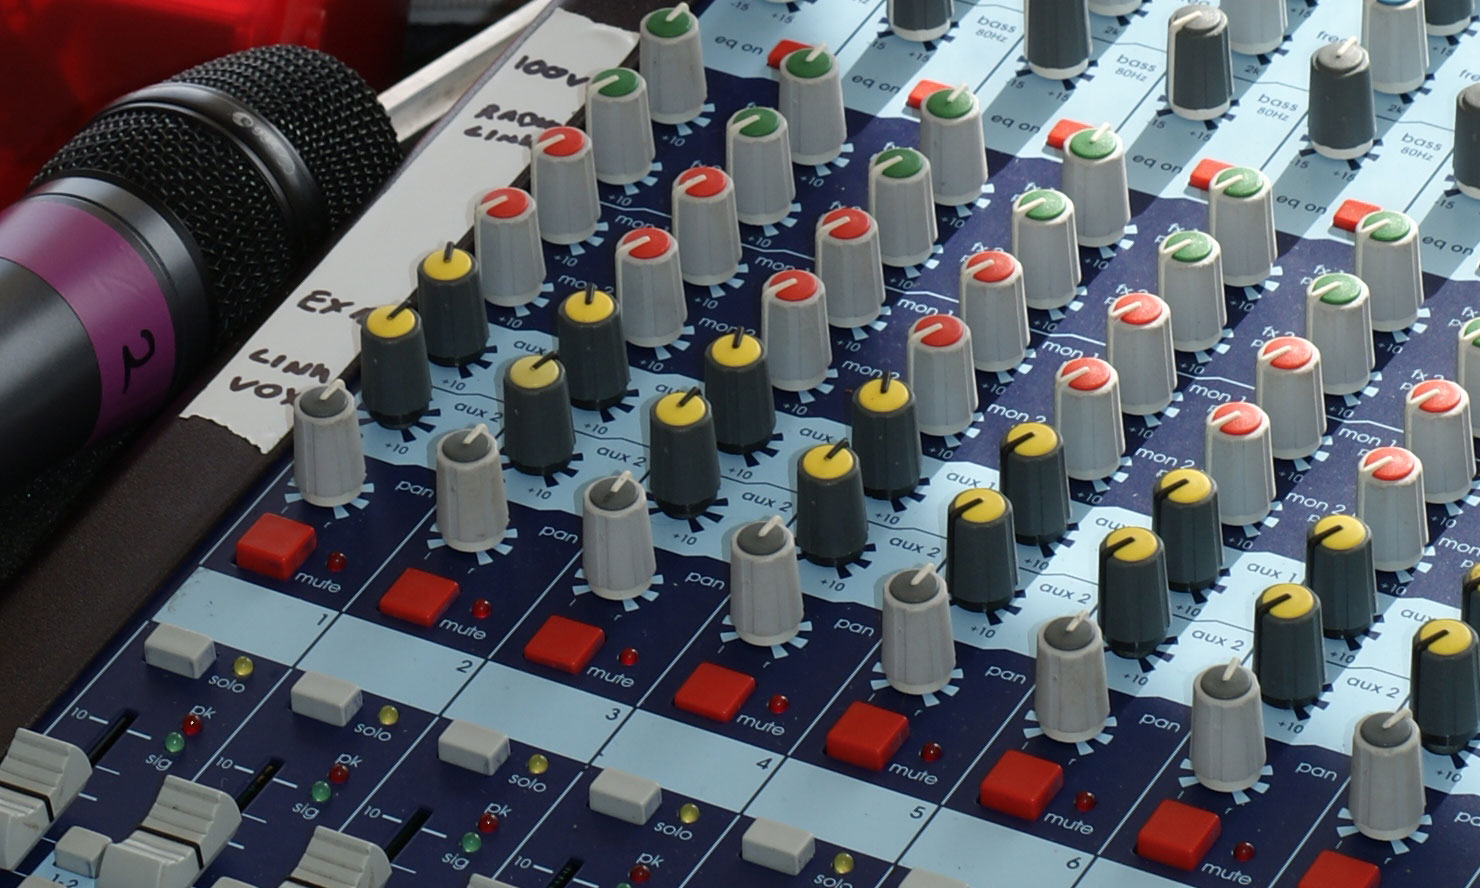 Audio Mixing Desk